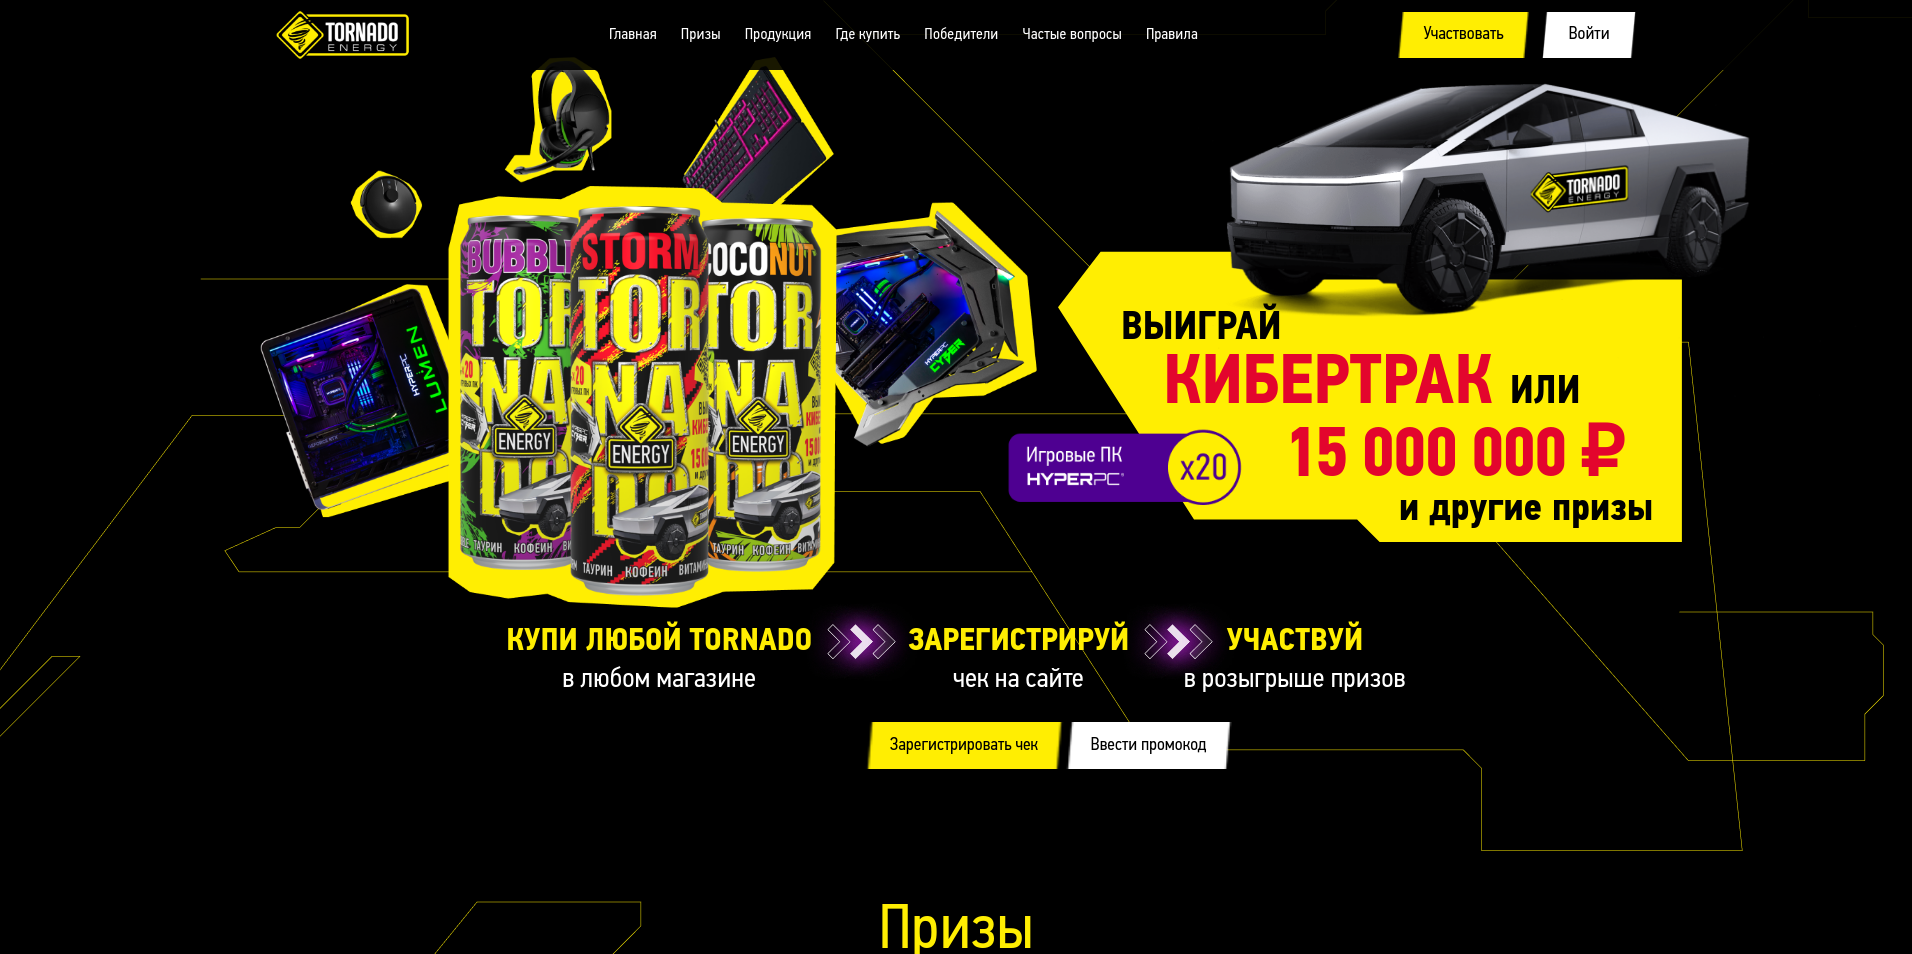 Миниатюра акции «Tornado: Кибертрак или 15 000 000 рублей»